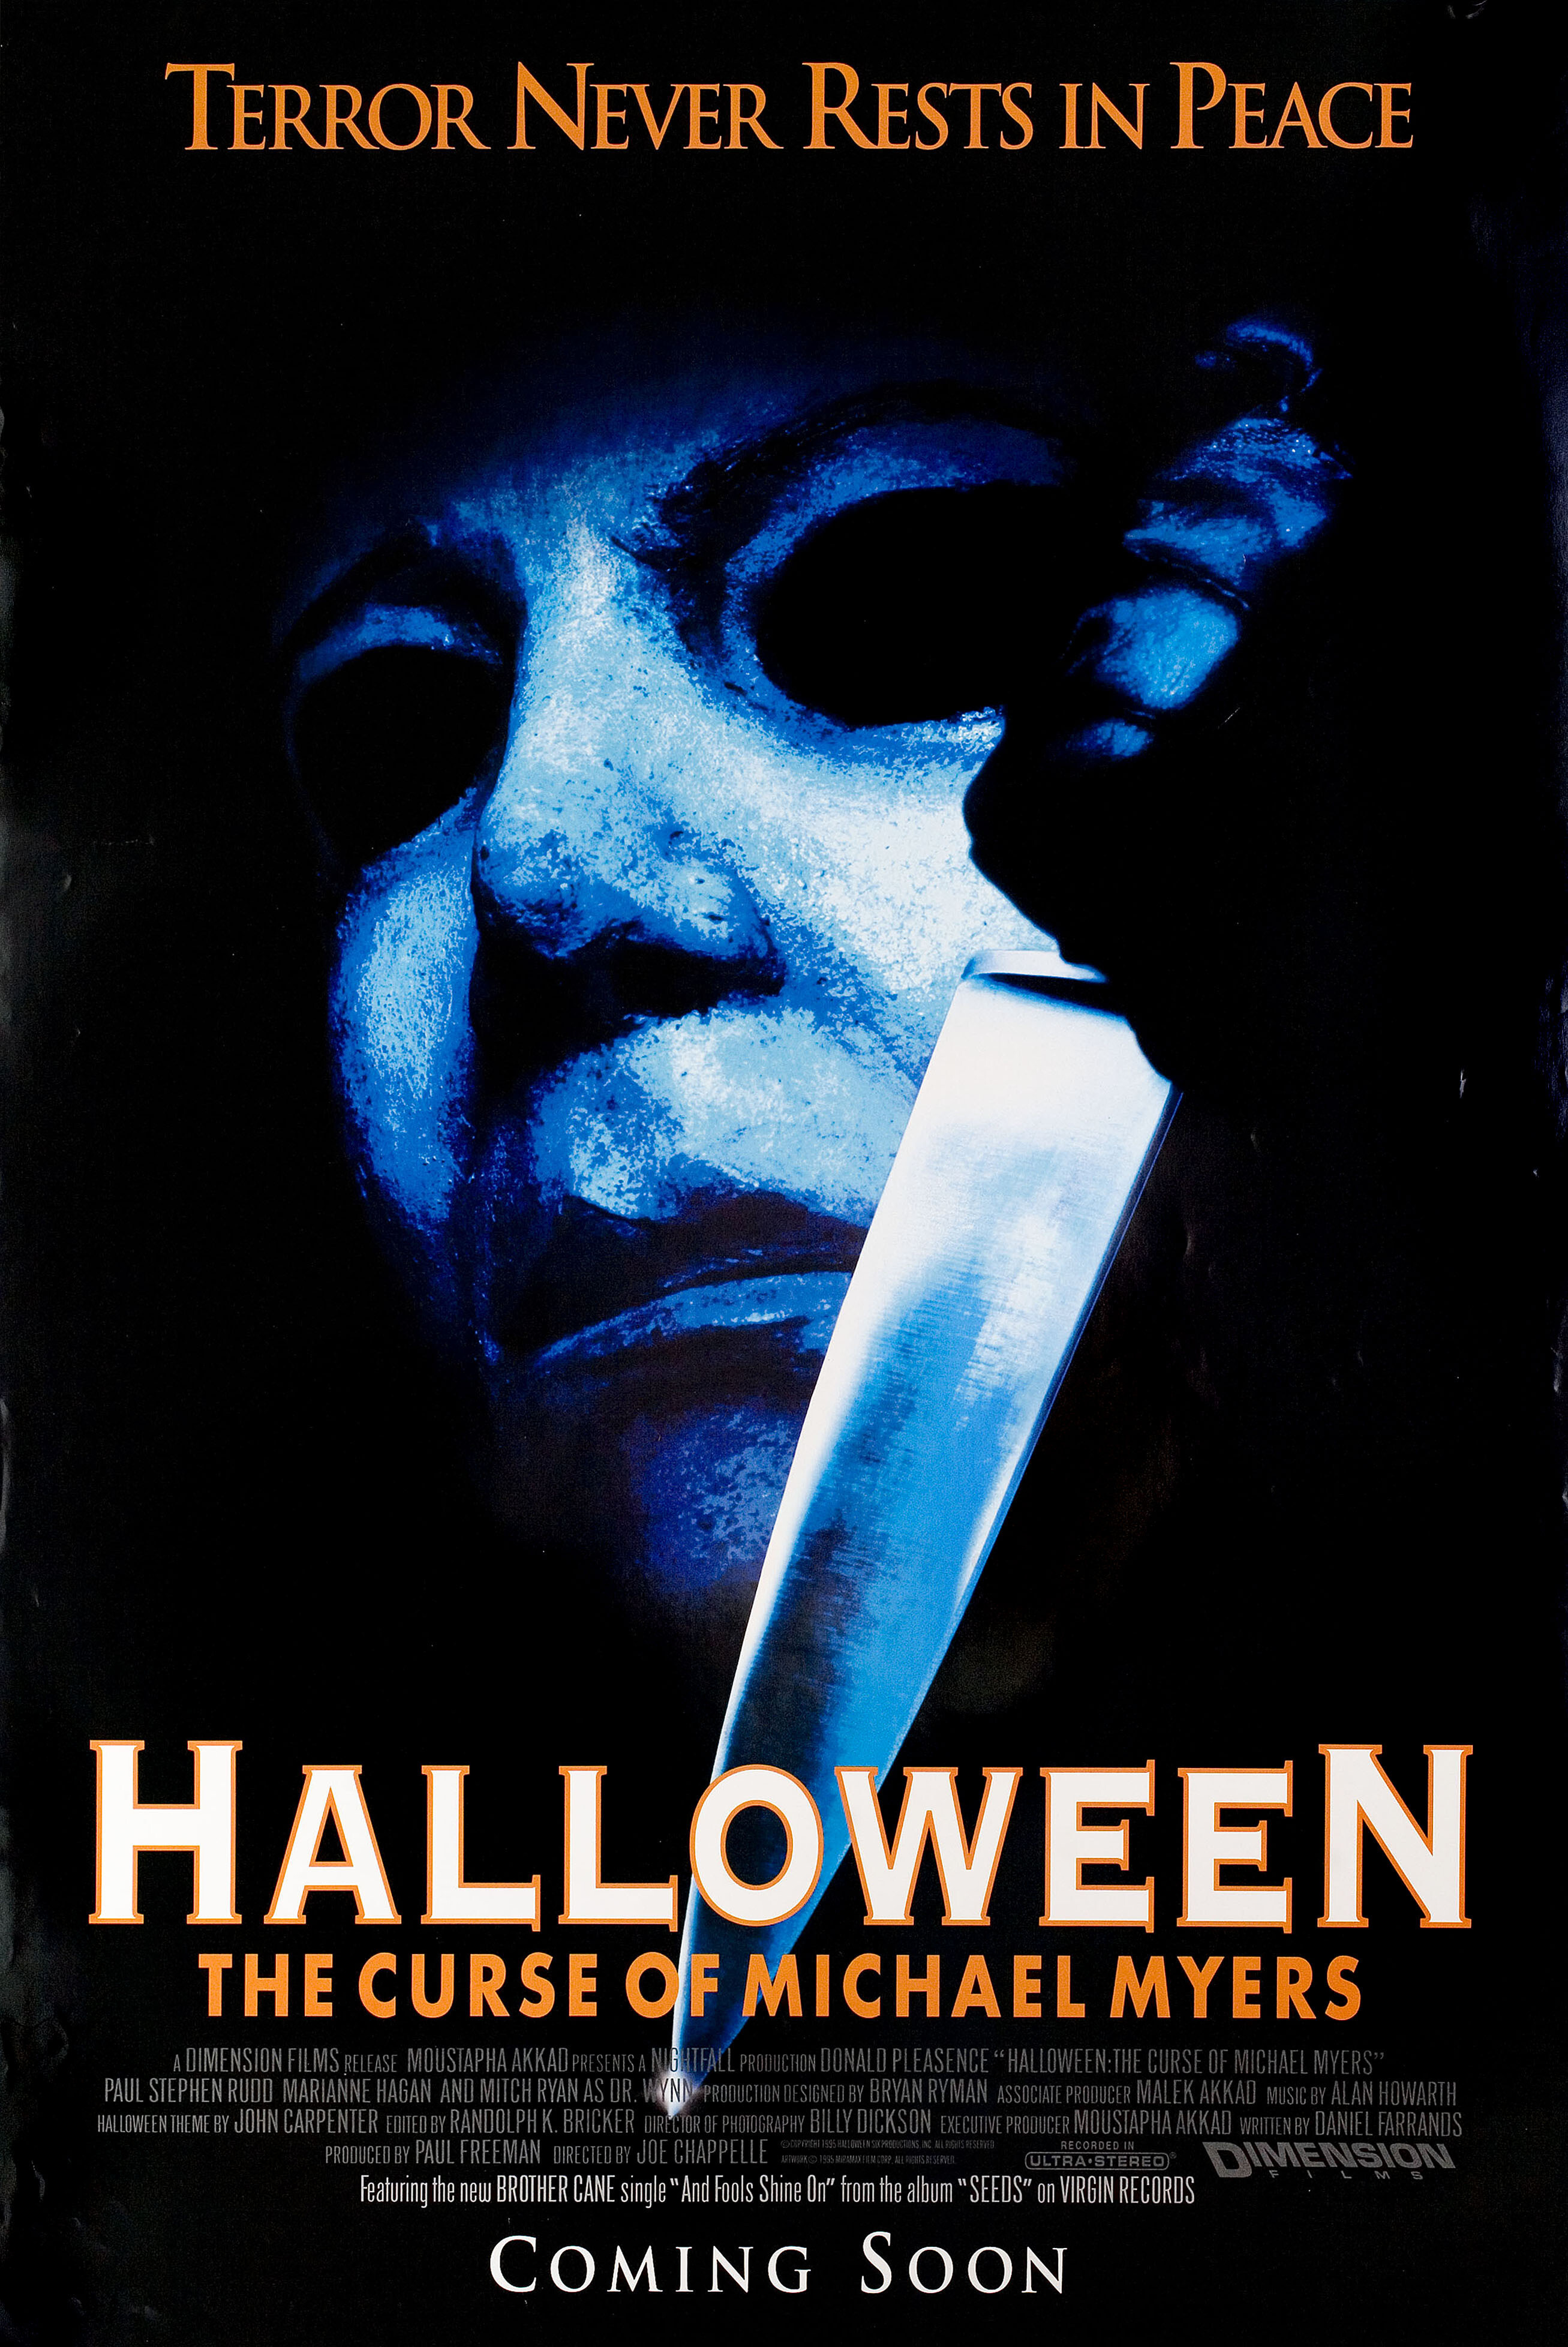 Хэллоуин 6: Проклятие Майкла Майерса (Halloween The Curse of Michael Myers, 1995), режиссёр Джо Чаппель, американский постер к фильму (ужасы, 1995 год)